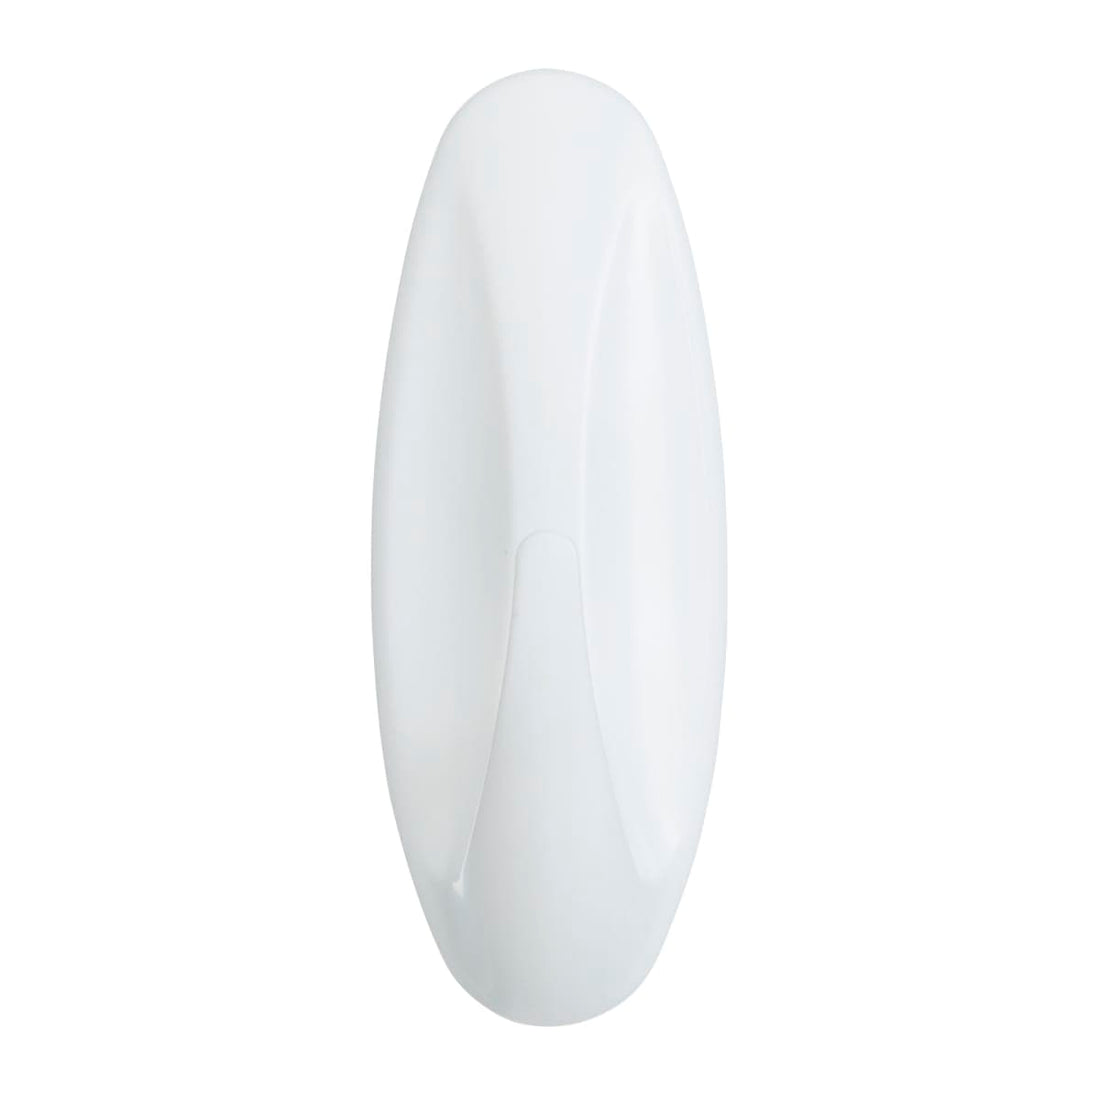 2 OVAL WHITE ADHESIVE HOOKS FOR BATHROOM COMMAND MEDIUM 1.3 KG - best price from Maltashopper.com BR410007409